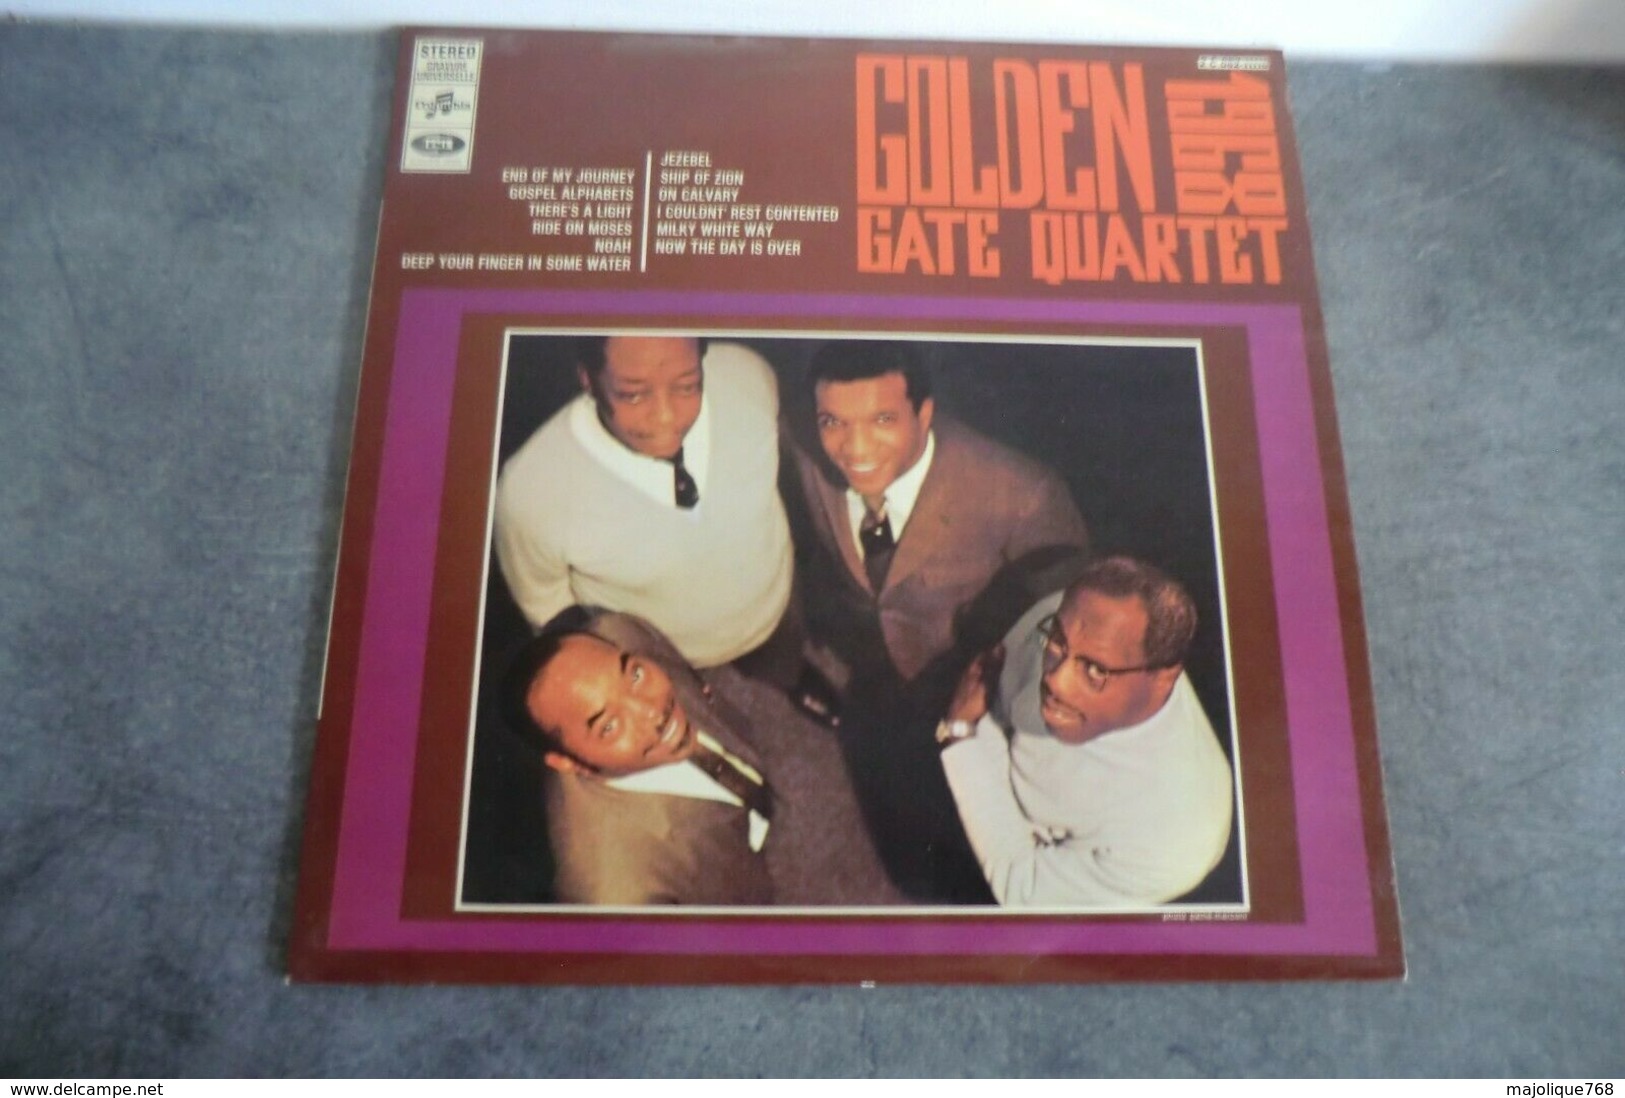 Disque - Golden Gate Quartet 1968 - Columbia 2 C 062-11116 - - Gospel & Religiöser Gesang